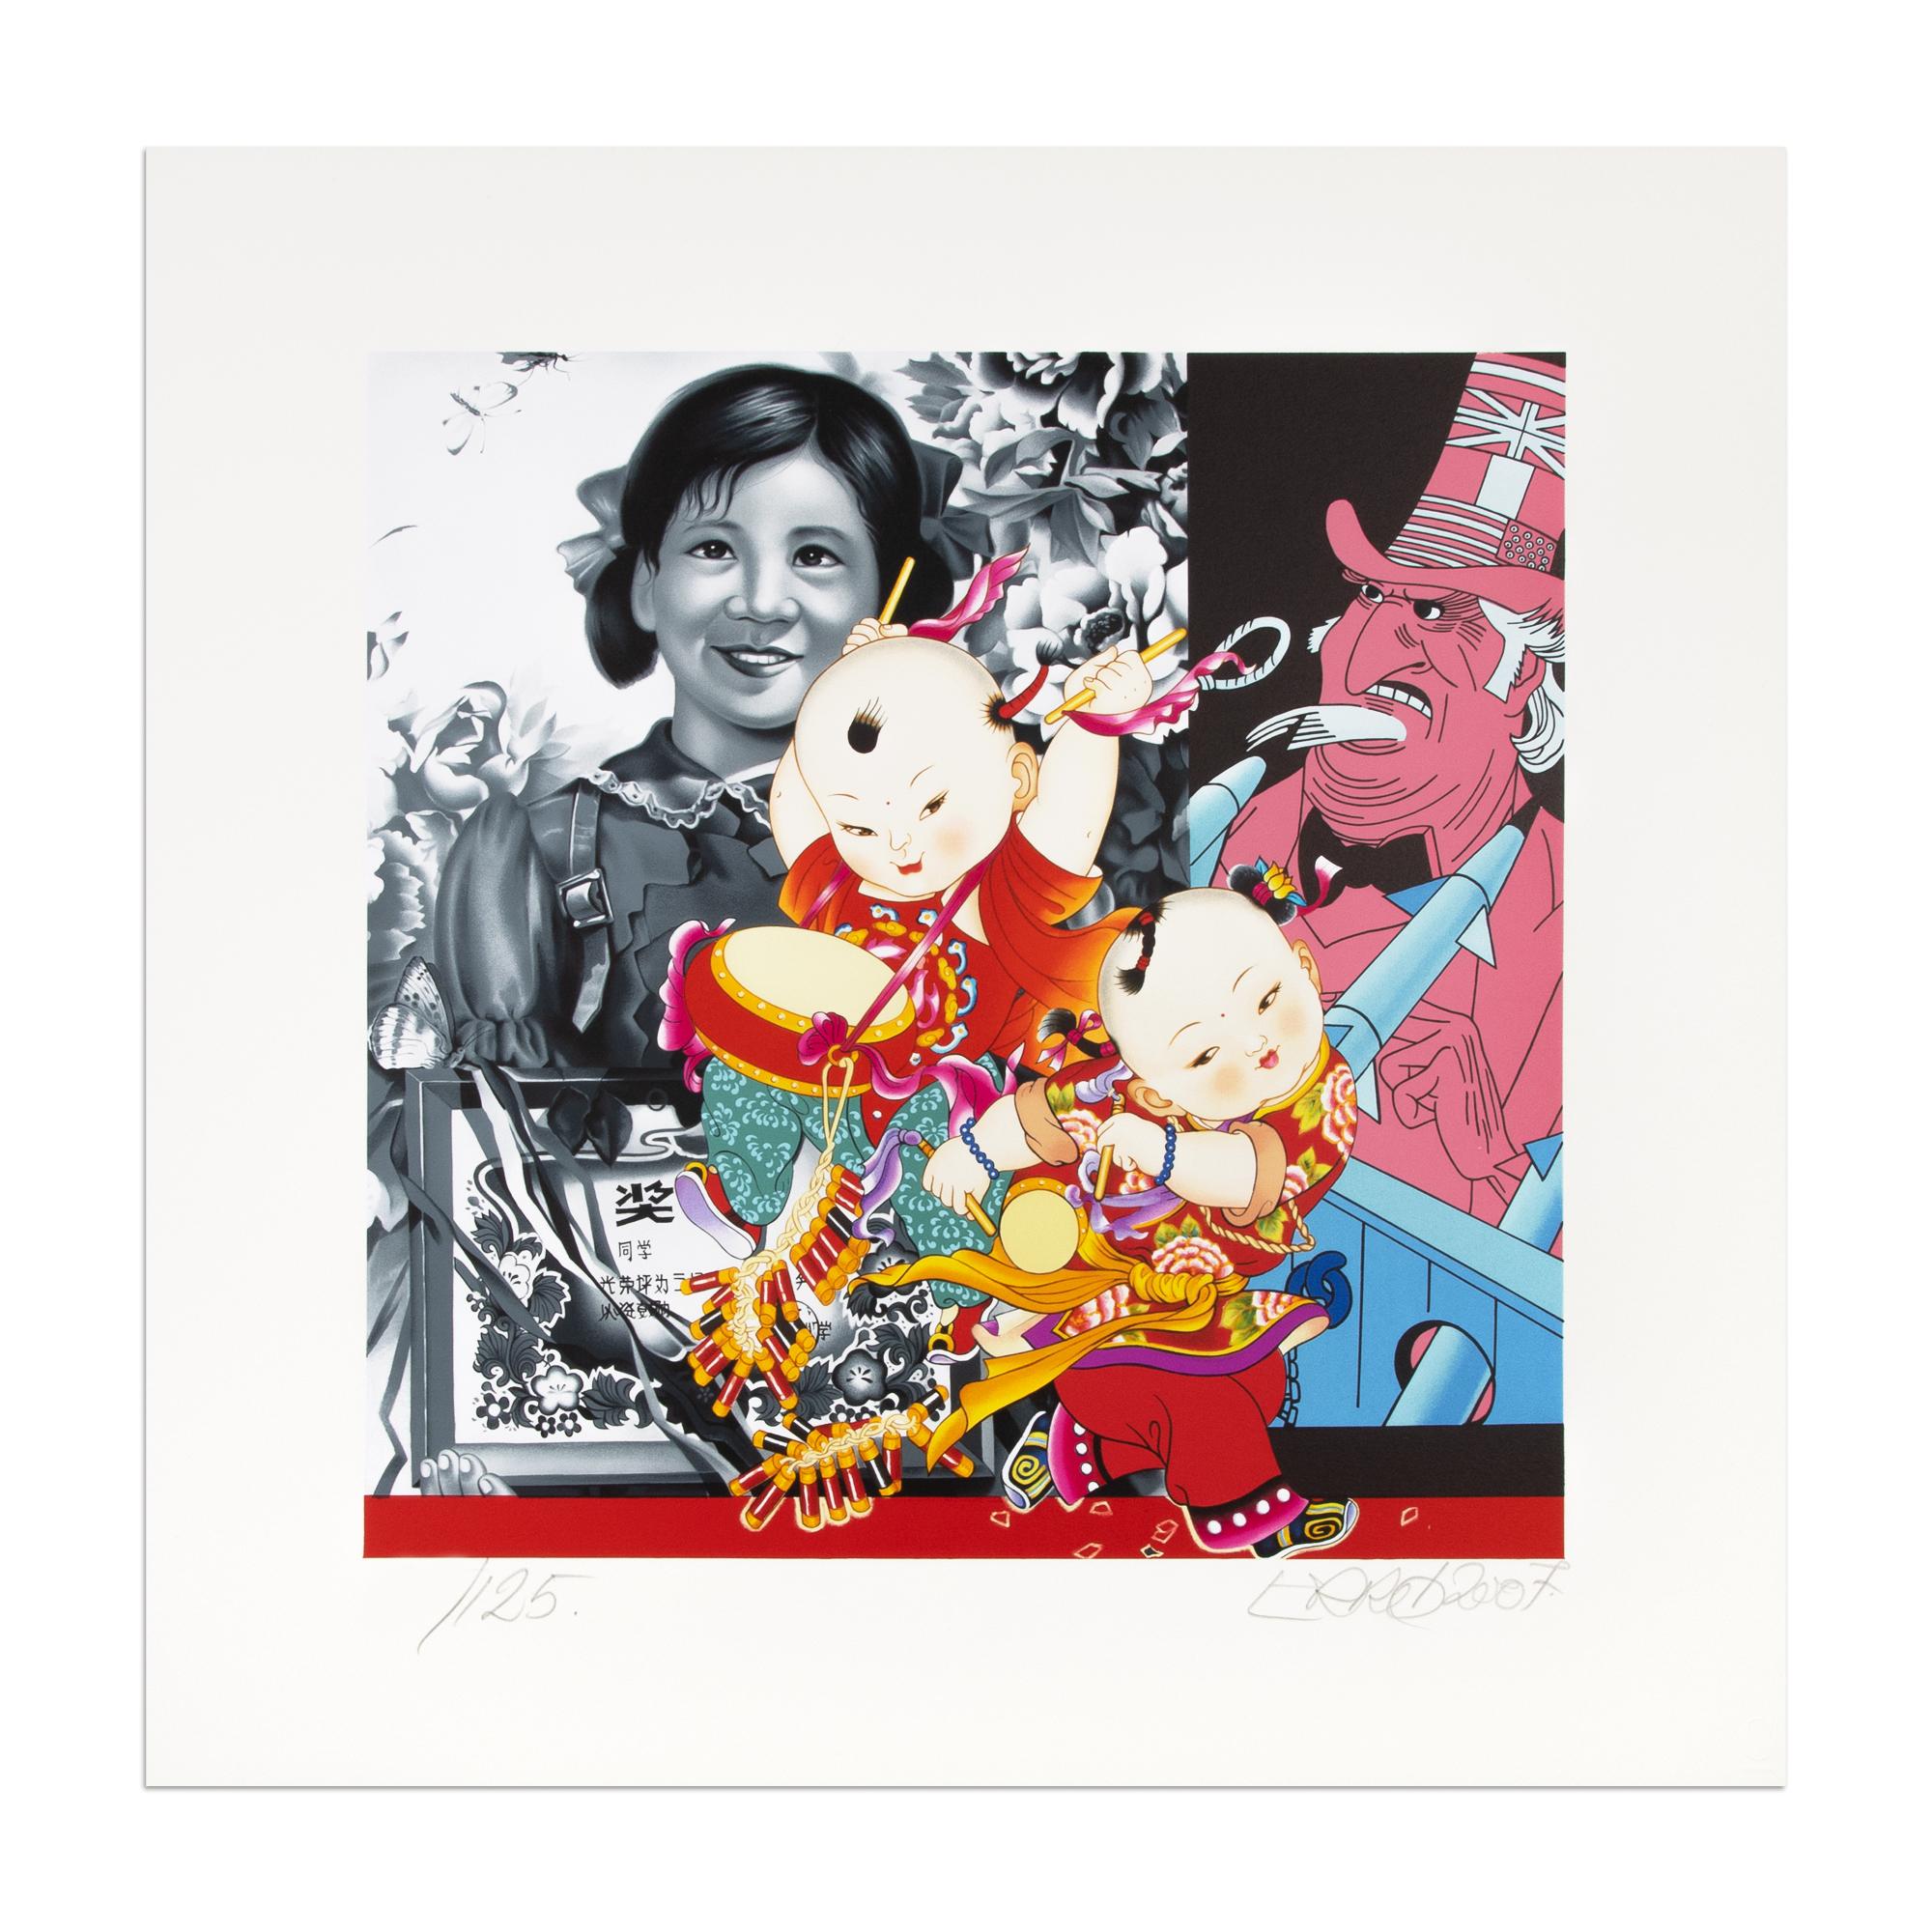 Erró (né en 1932 en Islande)
Les grands enfants de Mao, 2007
Moyen : Lithographie en couleurs
Dimensions : 55 x 55 cm
Edition de 125 : Hans signé et numéroté
Condit : Mint

"J'aimerais être considéré comme un artiste post-pop, mais j'aime avoir cinq